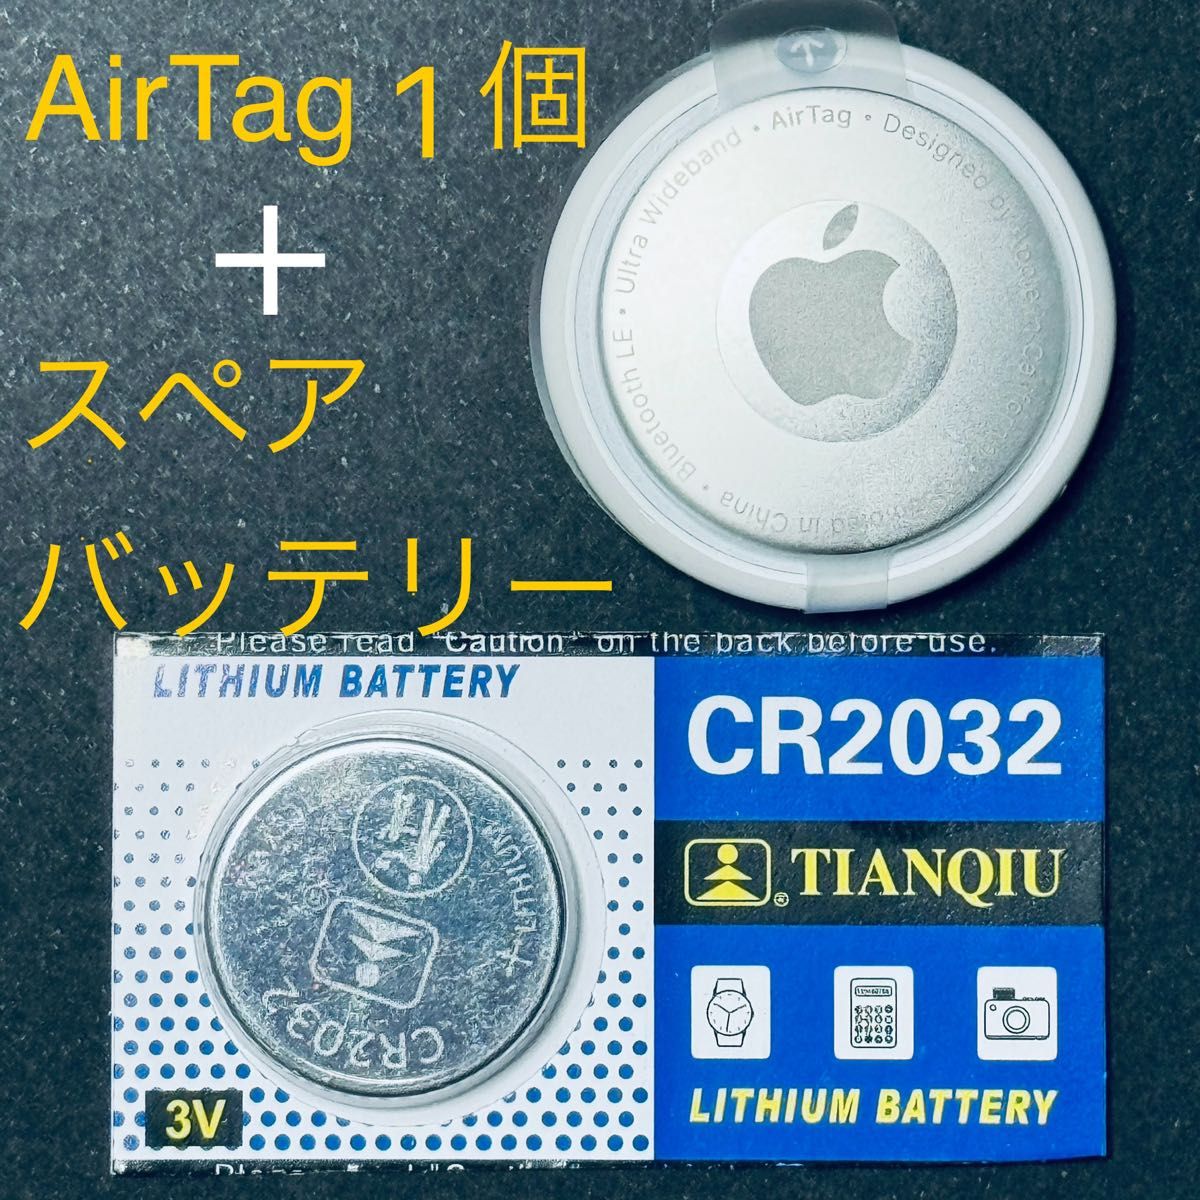 【予備電池付】Apple AirTag本体1個◆説明書付◆匿名配送